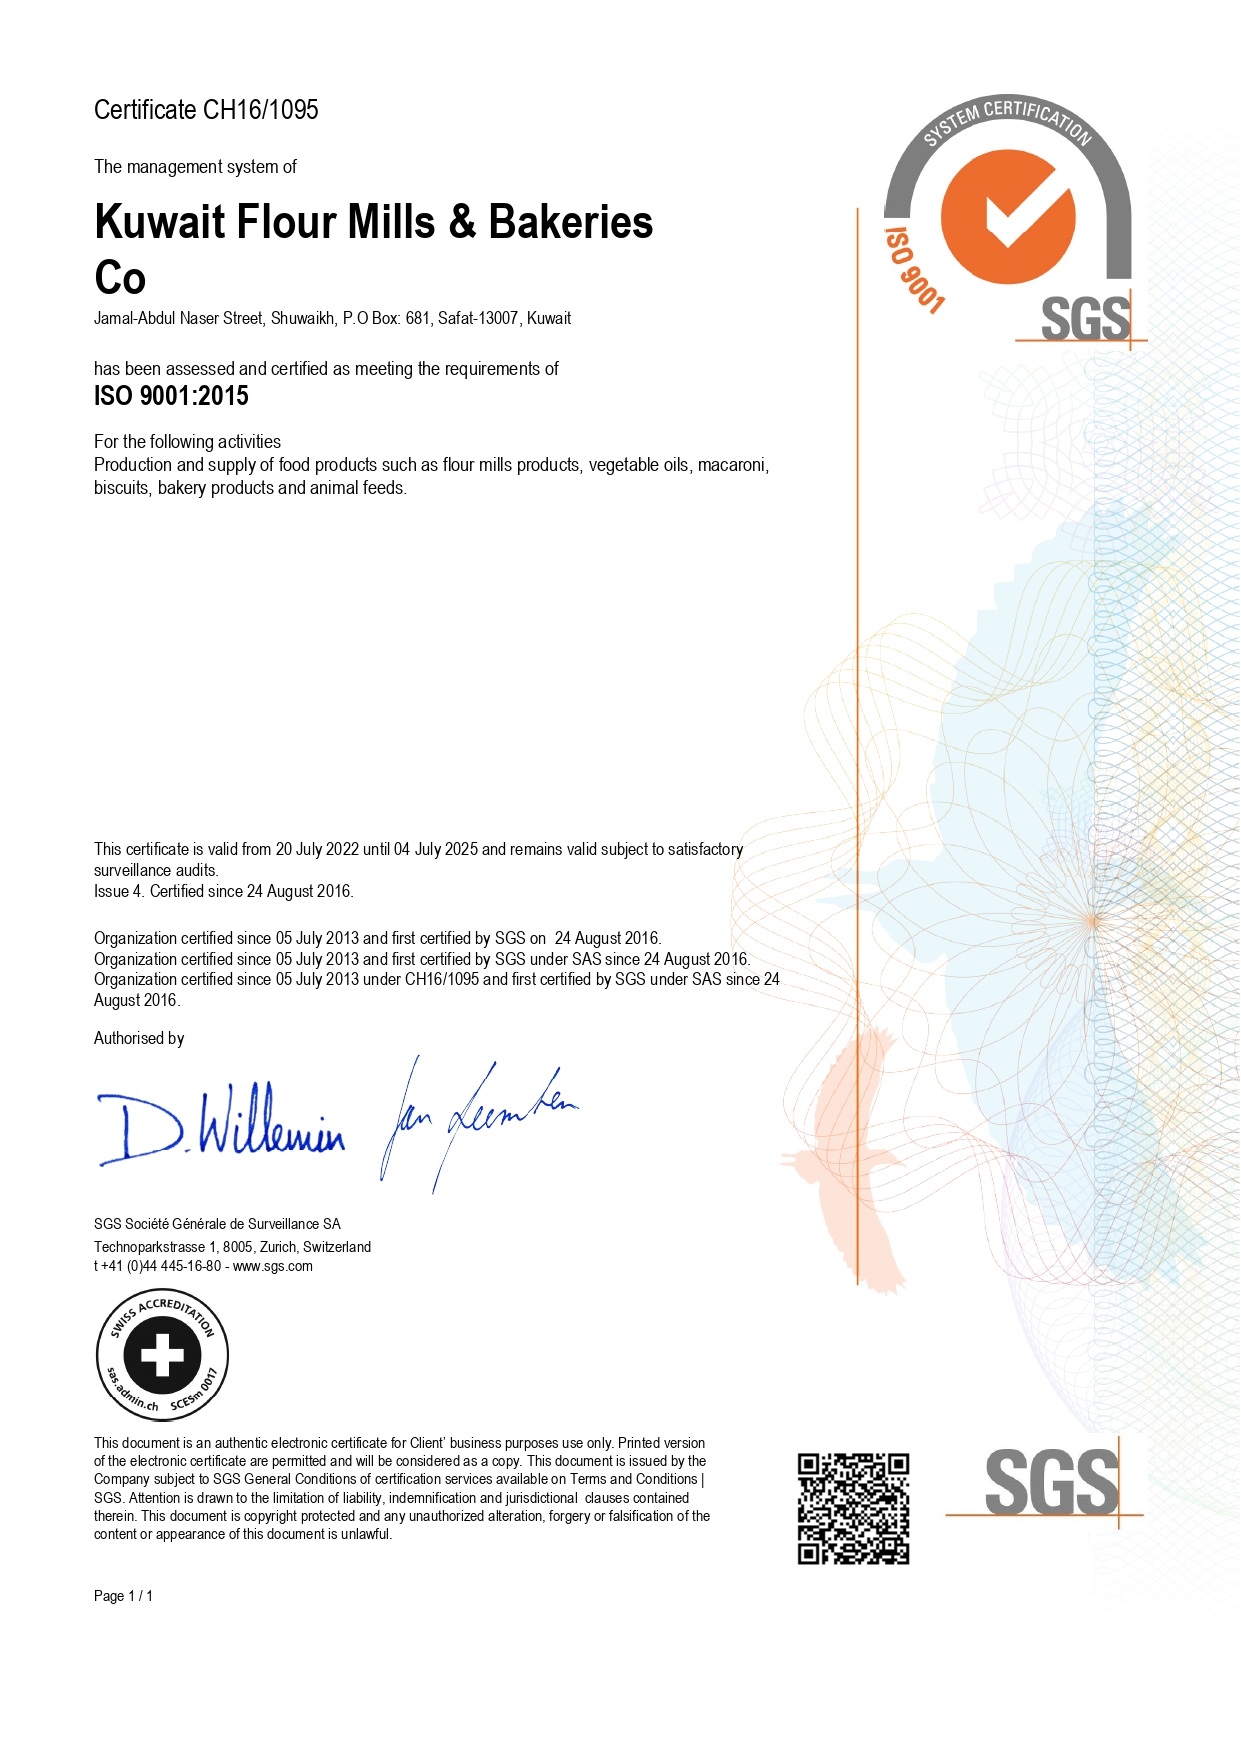 ISO 9001-2015 valid till 2025